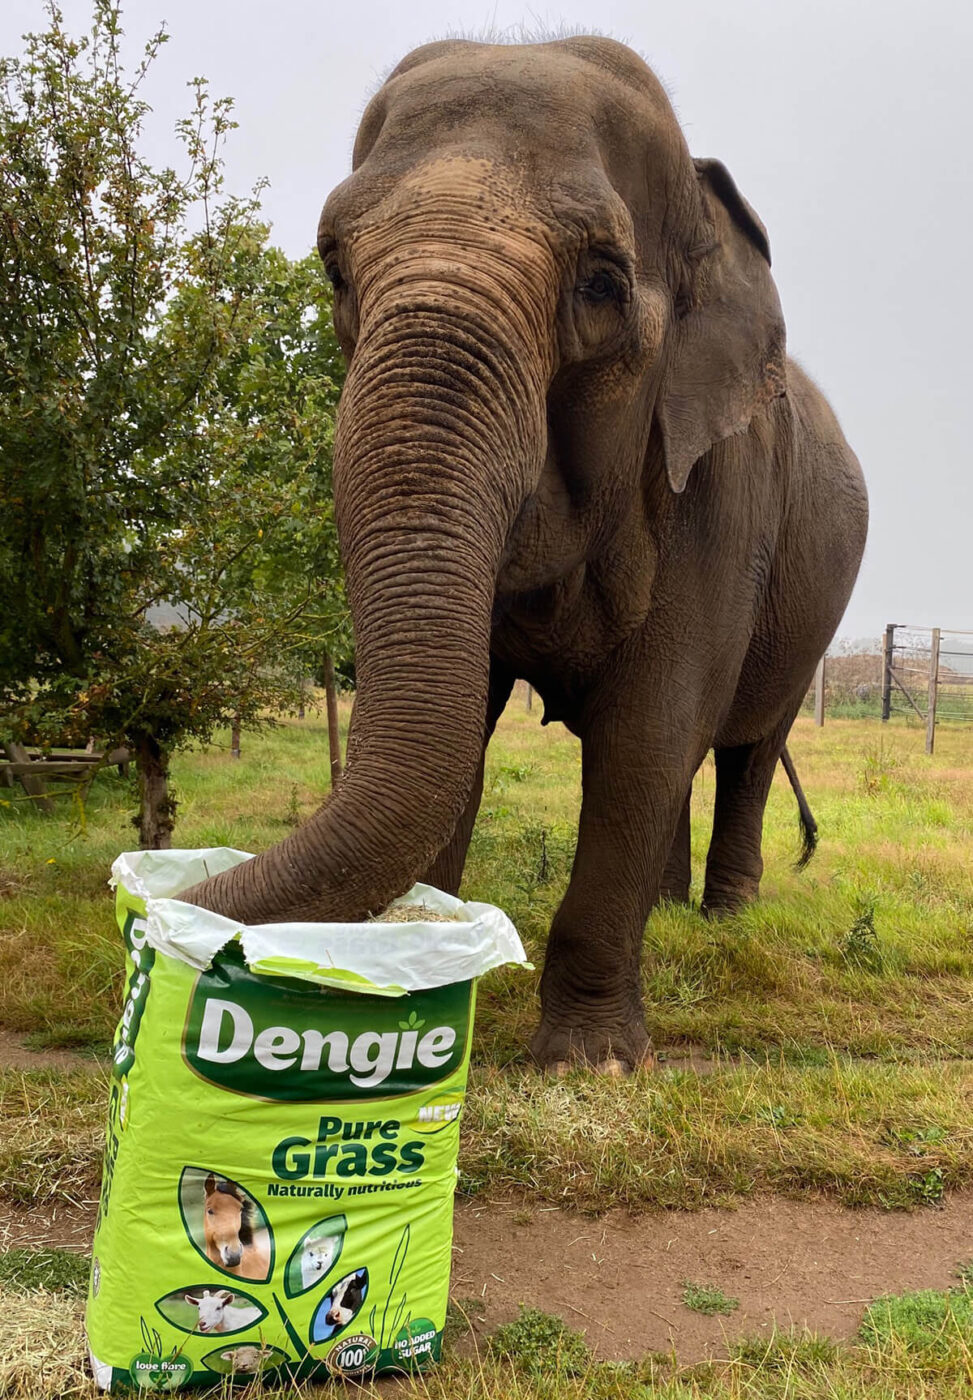 Elephant eating dengie grass